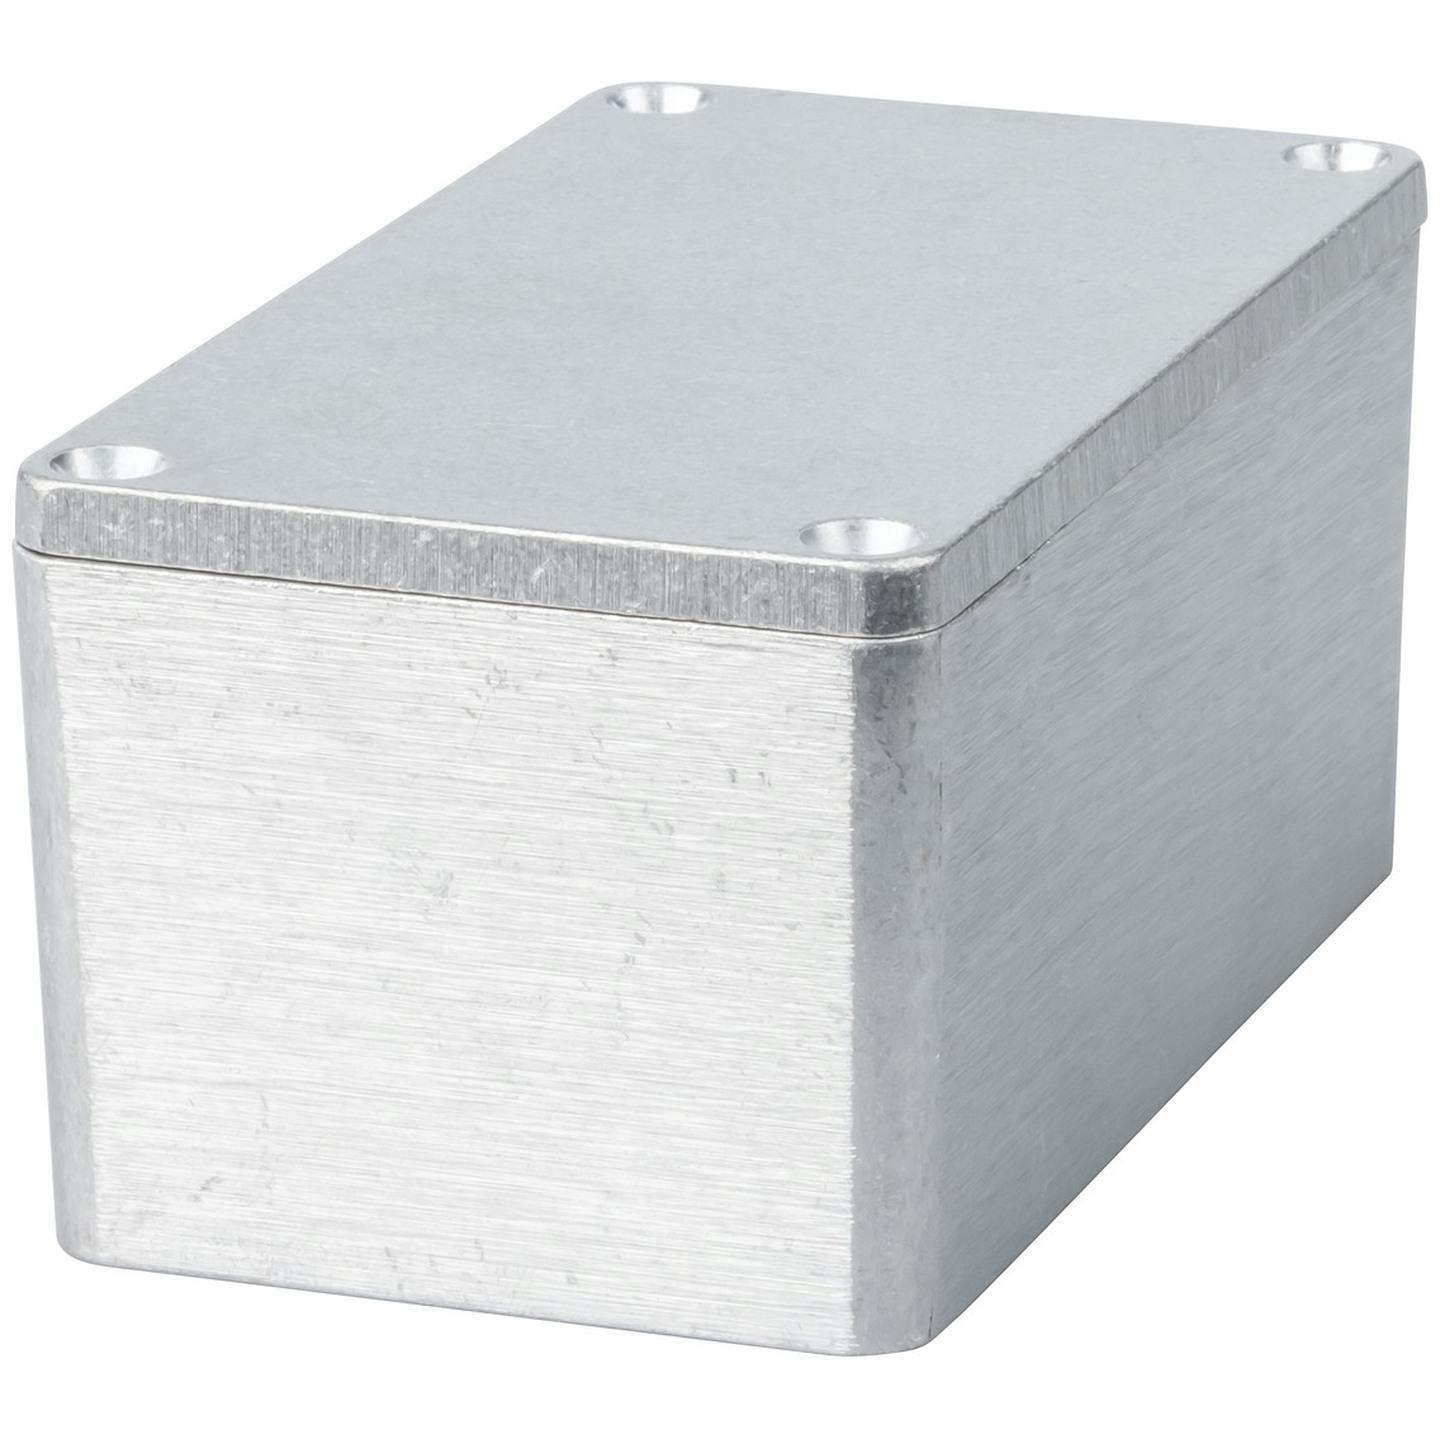 Sealed Diecast Aluminium Enclosure - 115 x 65 x 55